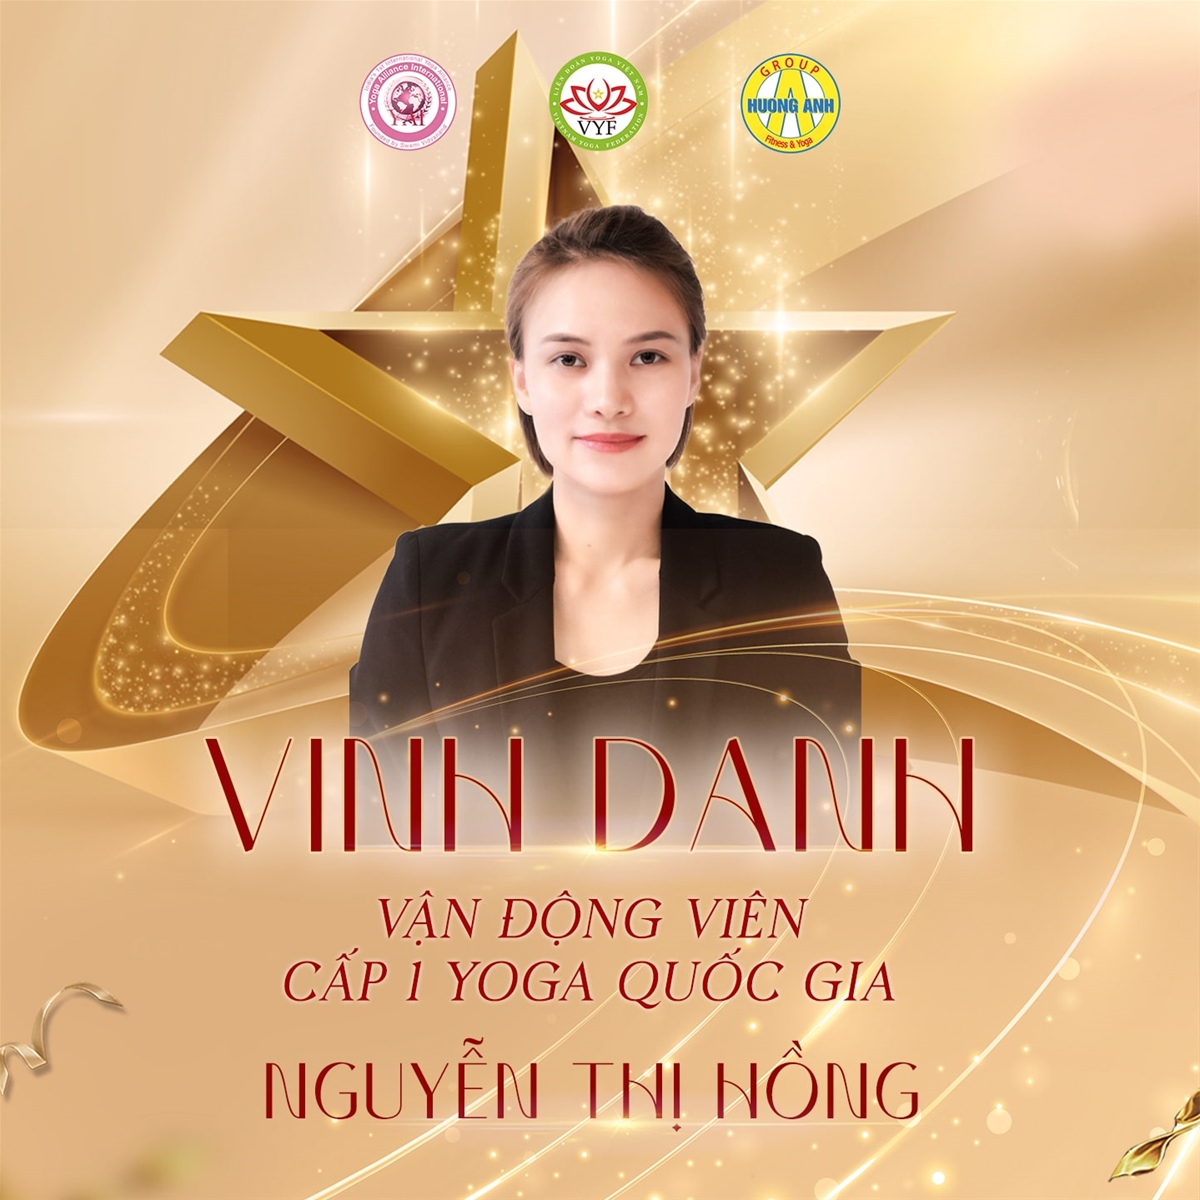 VĐV Yoga cấp 1 Nguyễn Thị Hồng